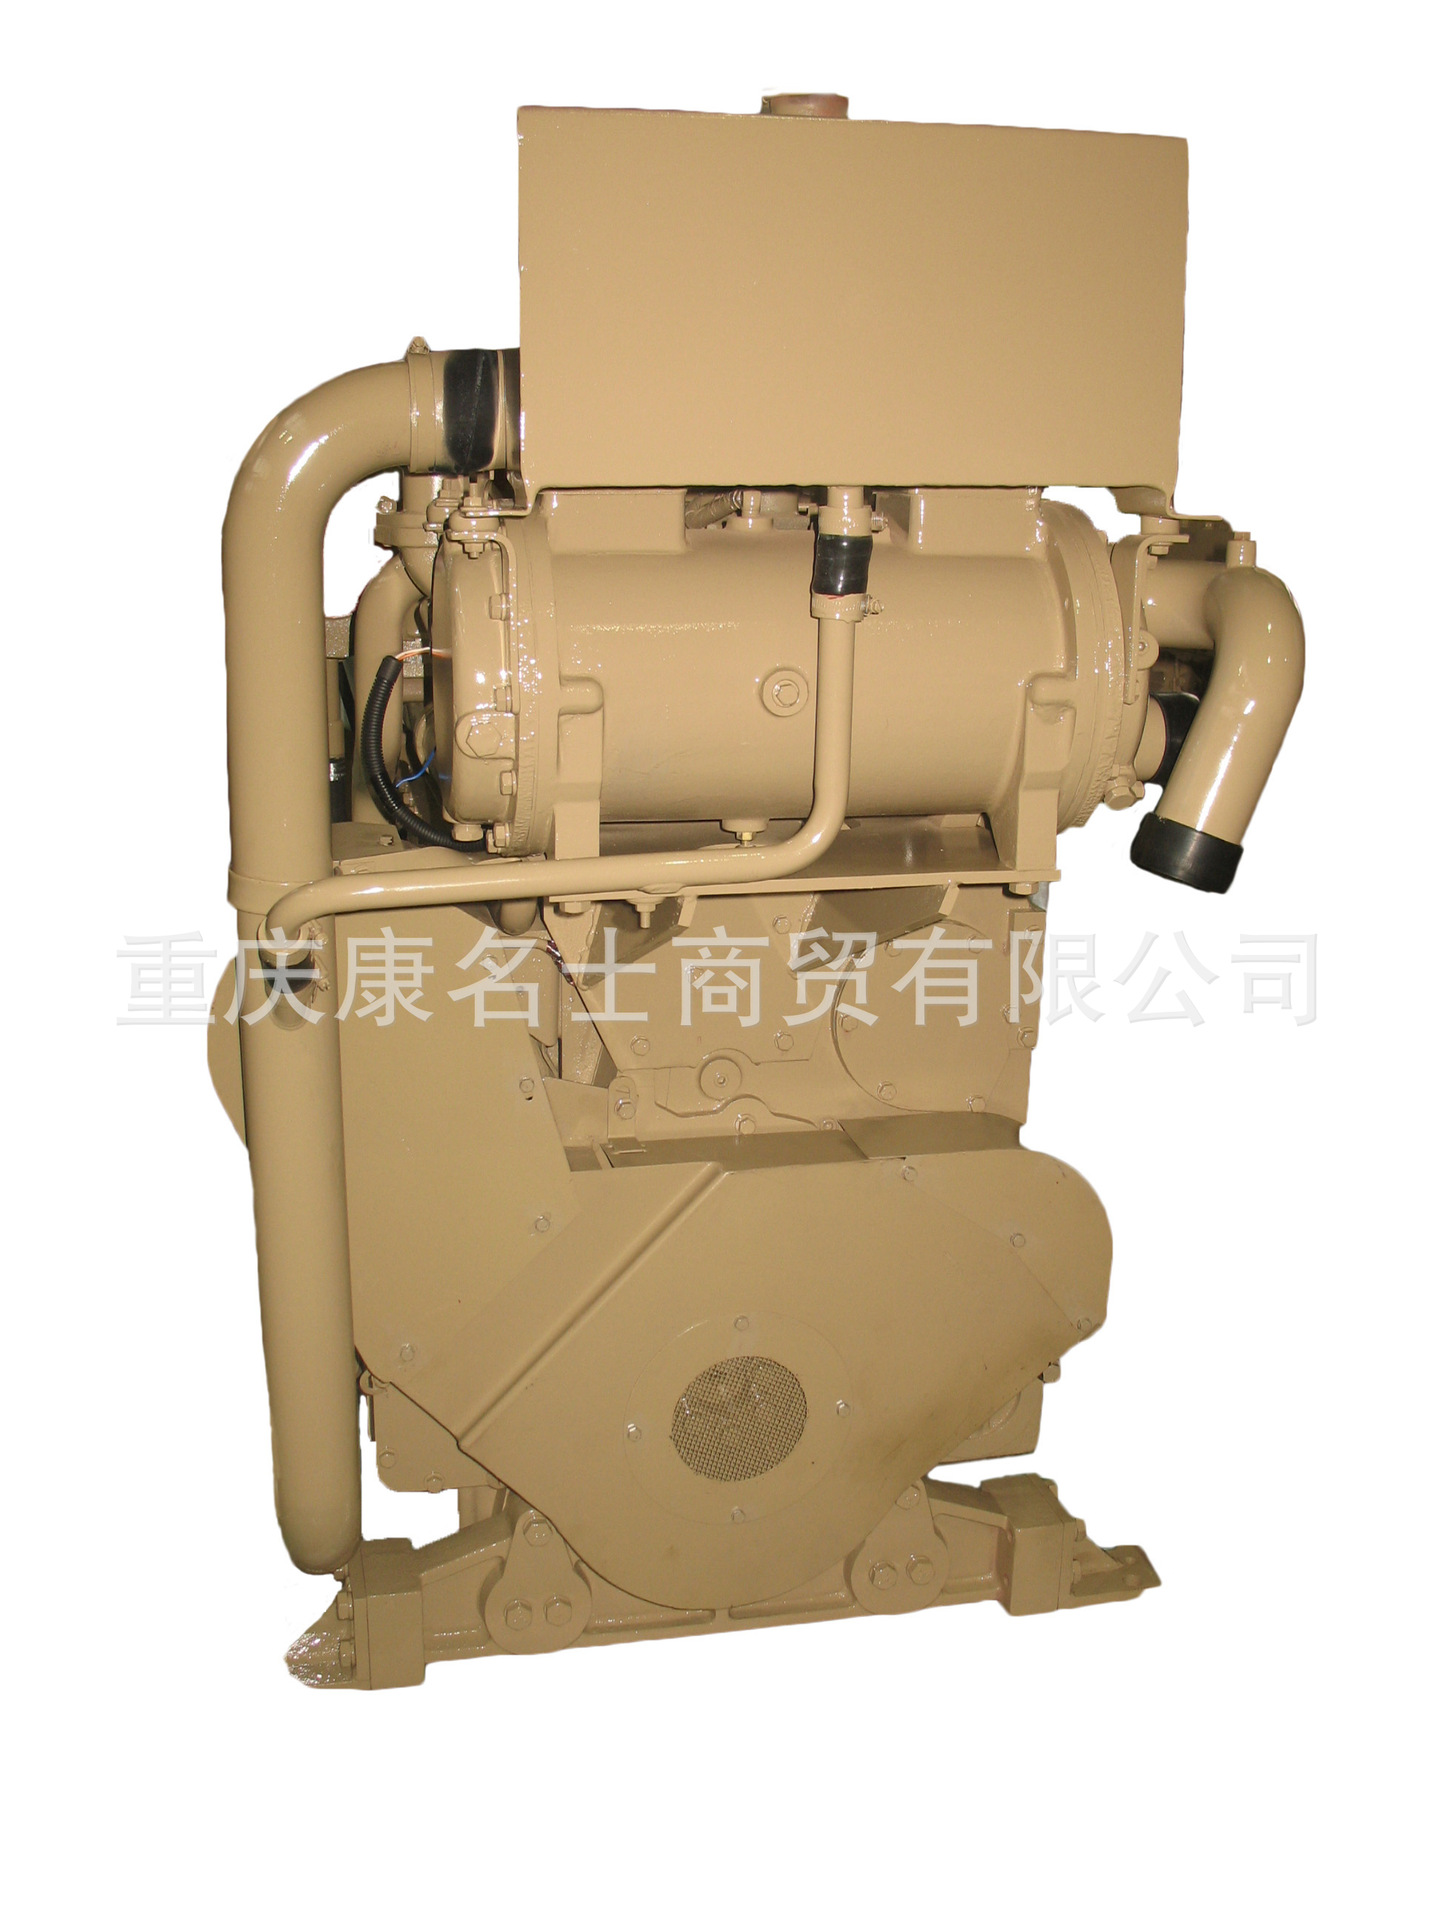 4955529康明斯水泵套件QSC8.3500 IDI发动机配件厂价优惠